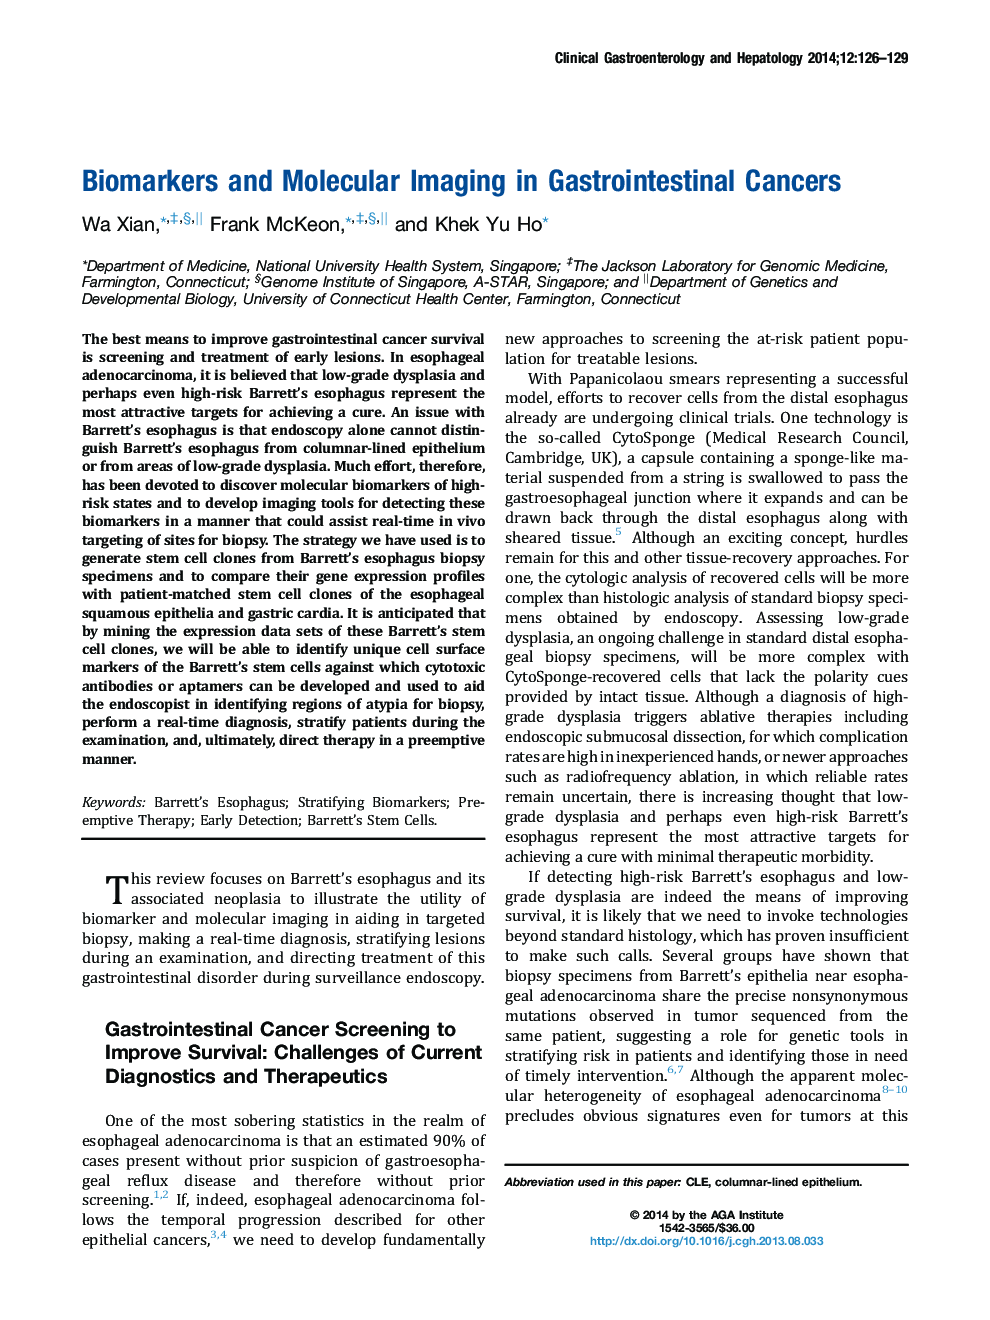 بیومارکرها و تصویربرداری مولکولی در سرطانهای دستگاه گوارش 